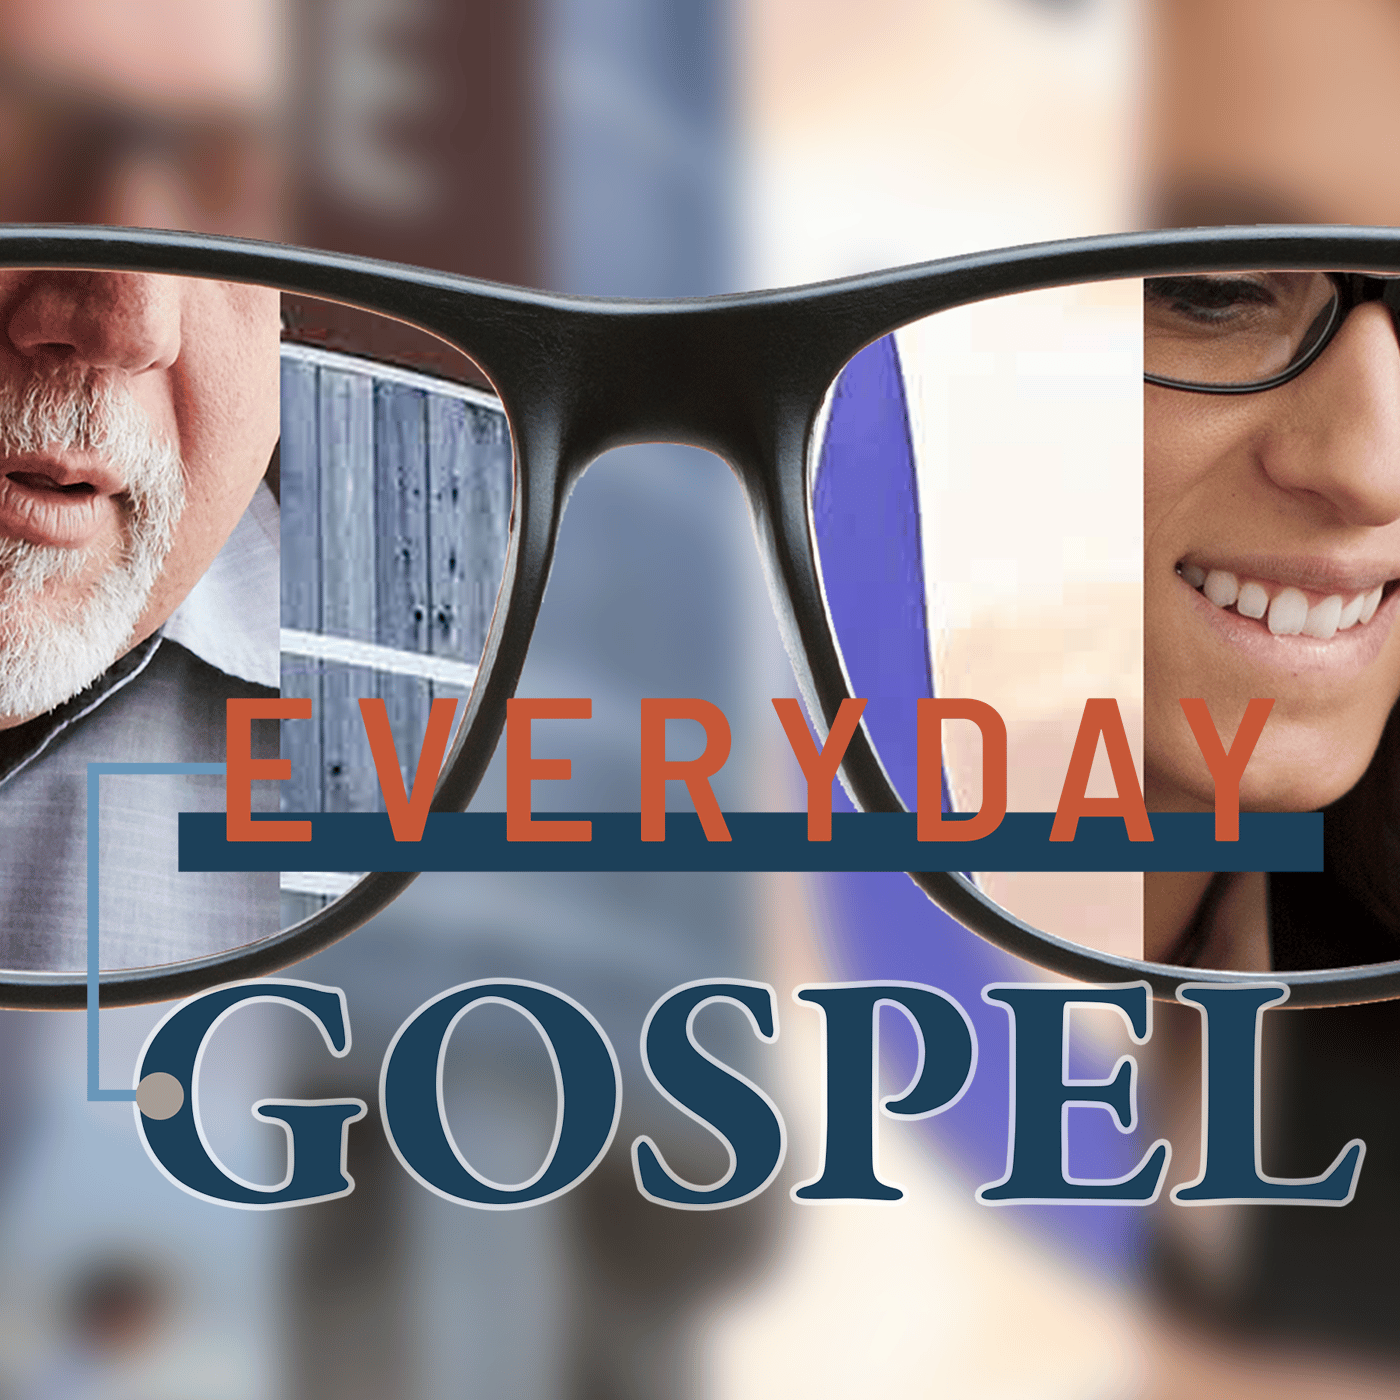 Everyday Gospel Fall 2022: Week 3 Image